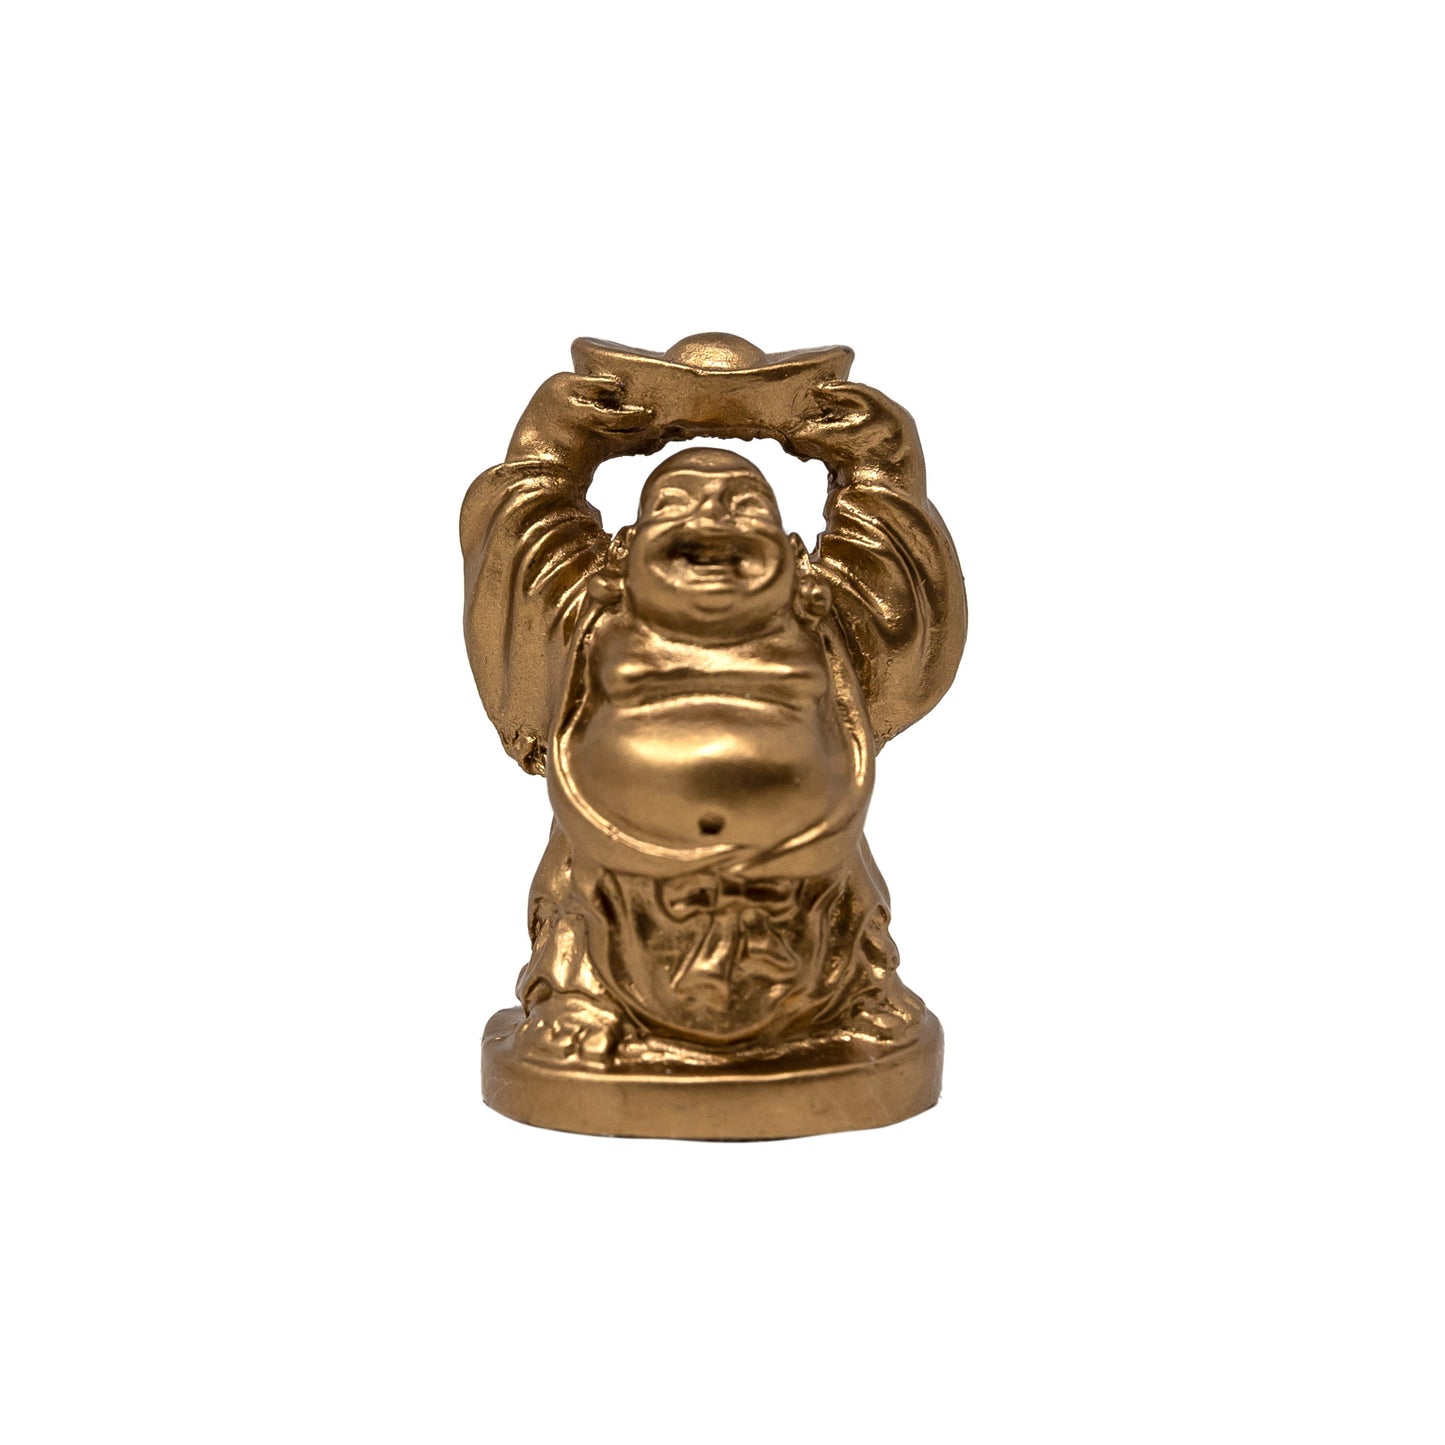 Miniature Gold Laughing Buddha